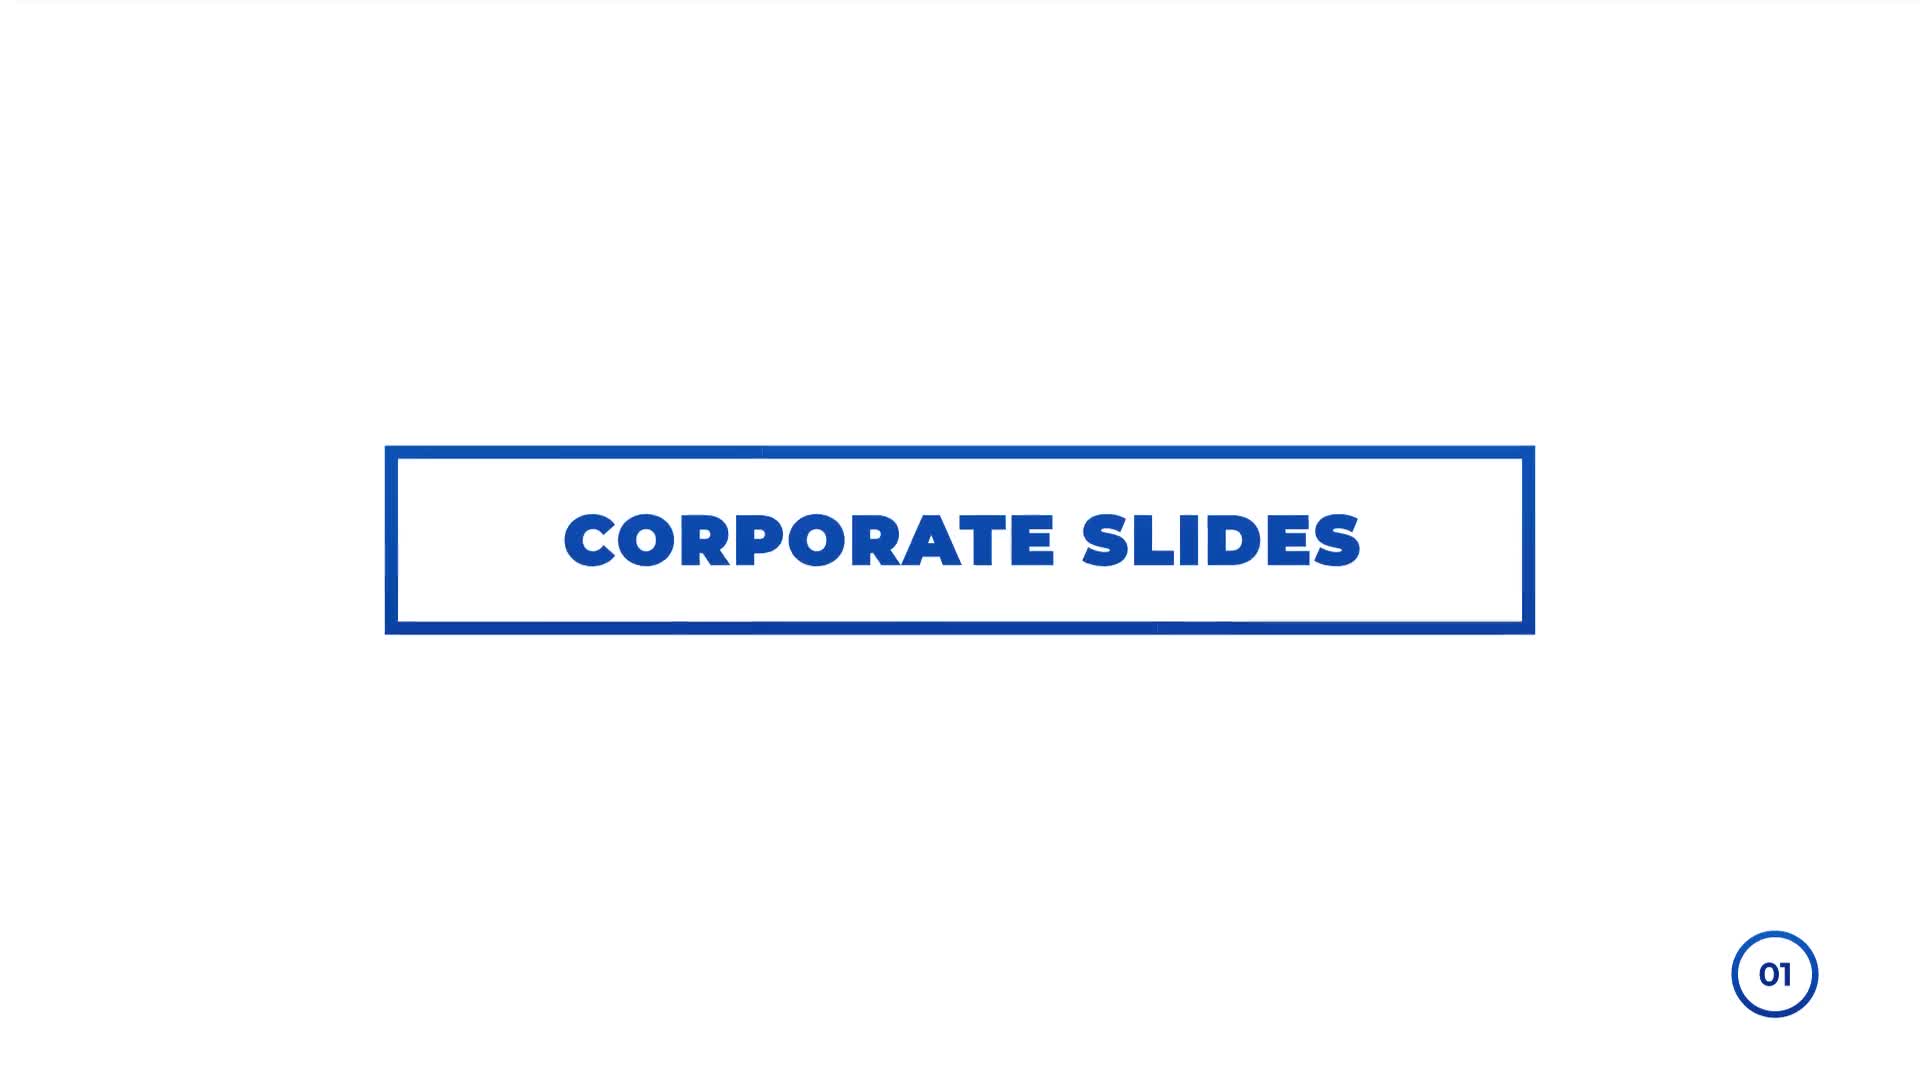 Corporate Slides for Premiere Pro Videohive 32233858 Premiere Pro Image 1